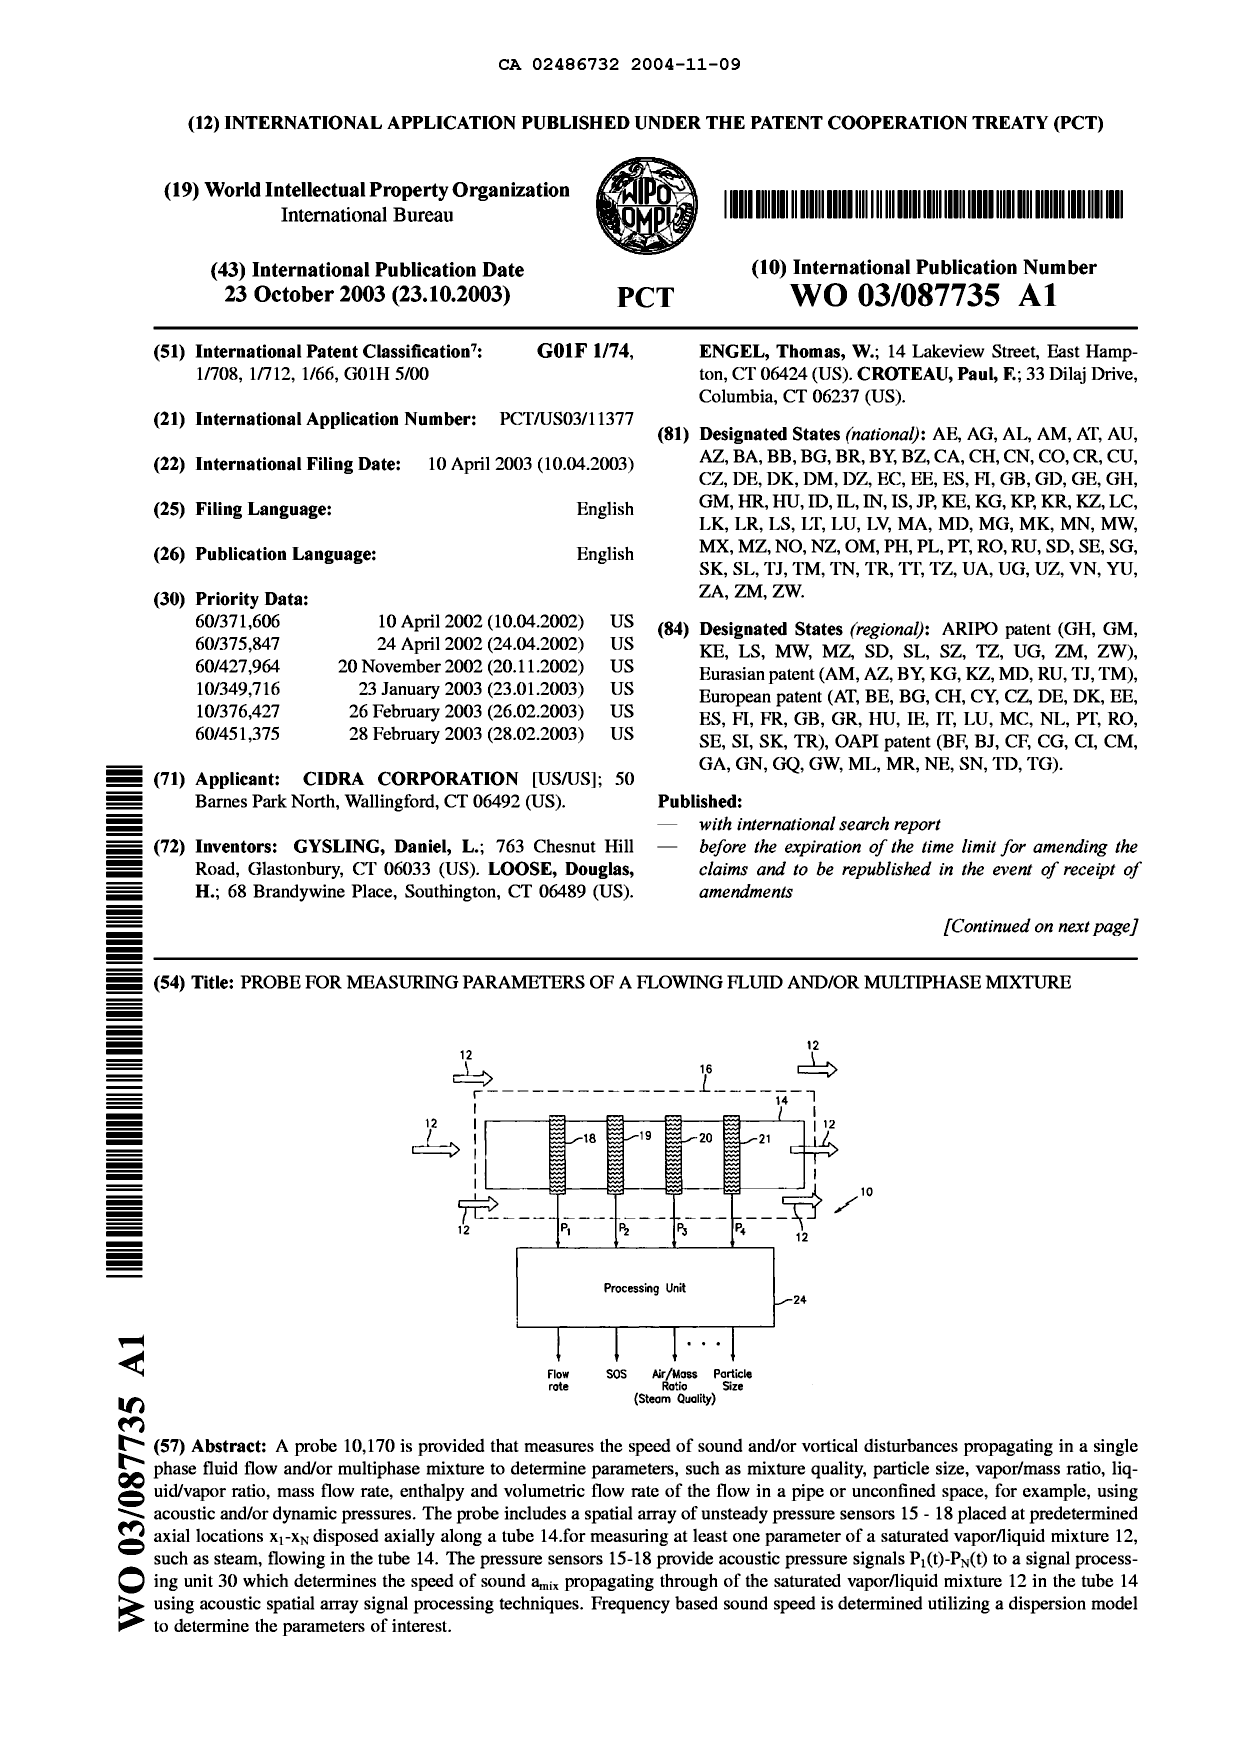 Document de brevet canadien 2486732. Abrégé 20041109. Image 1 de 2